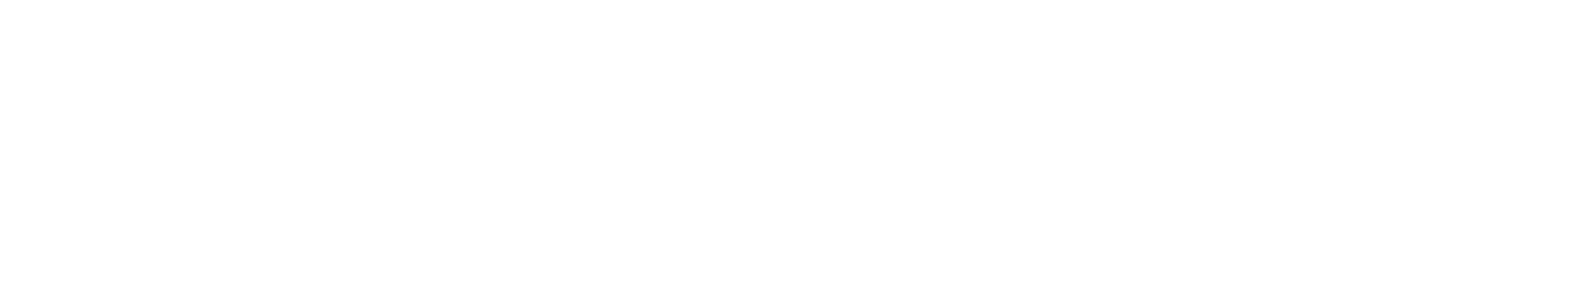 SeaSpine logo large for dark backgrounds (transparent PNG)